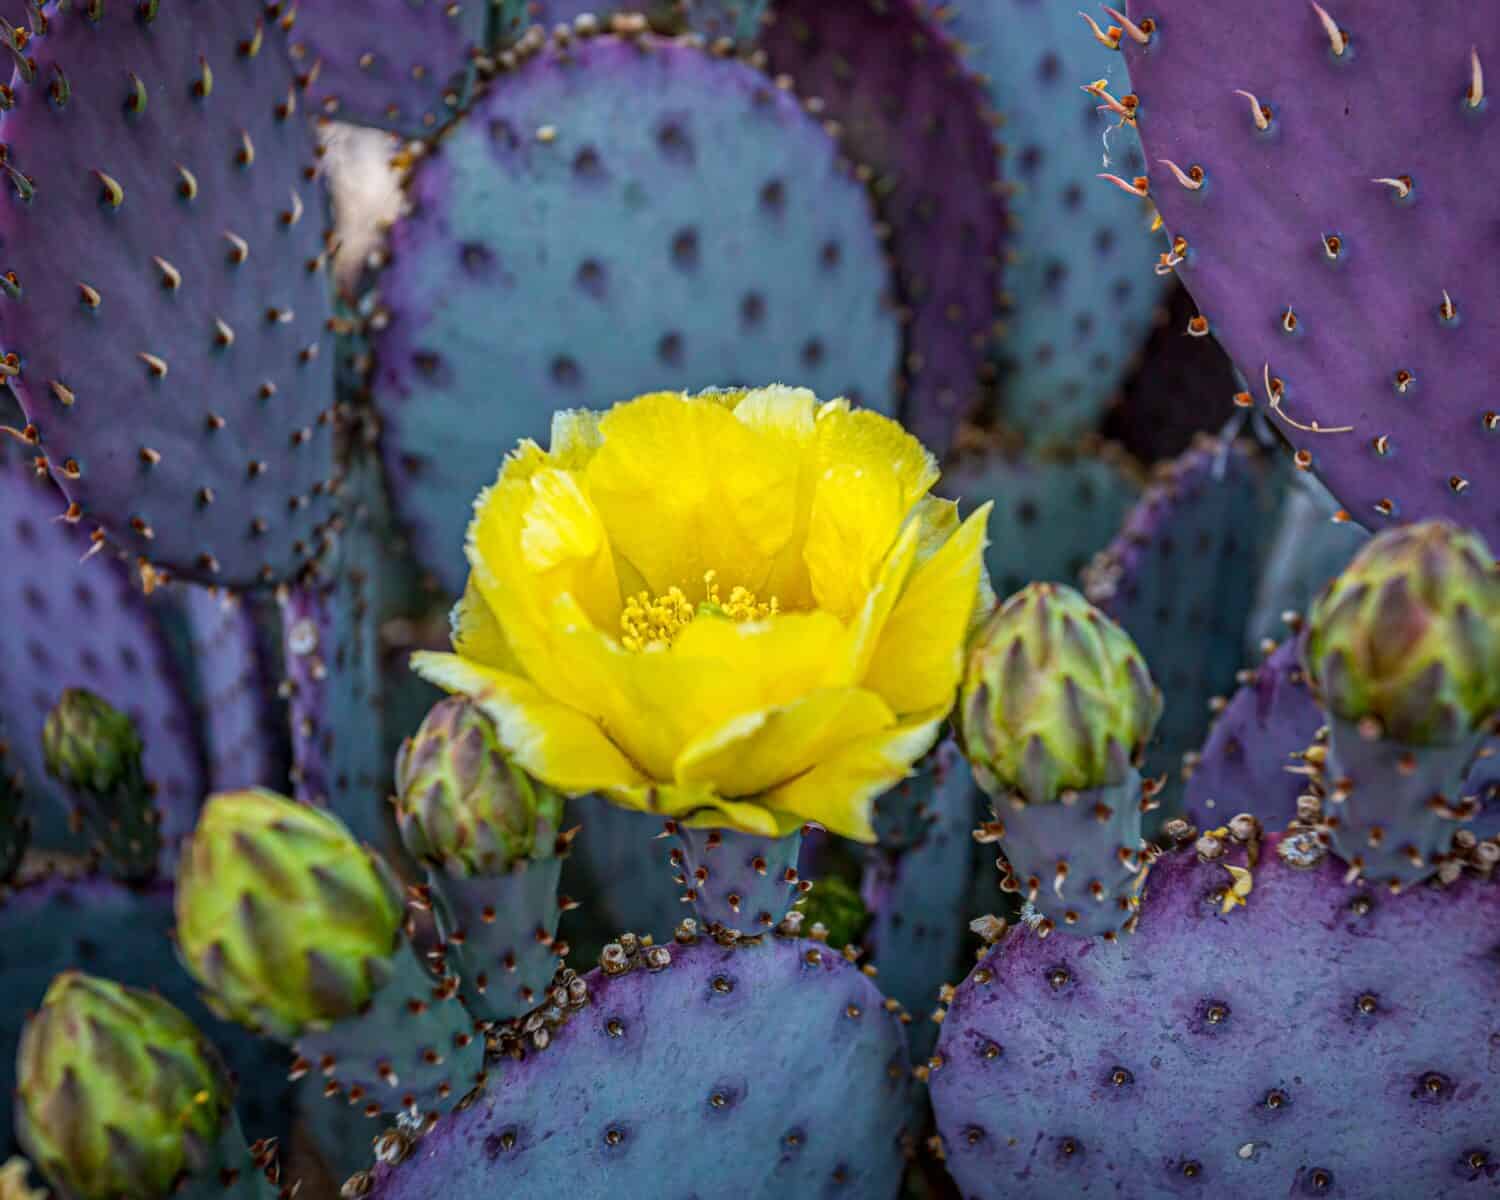 Il fico d'India Santa Rita del deserto di Sonora cambia colore a seconda della luce disponibile e della stagione.  I fiori giallo brillante offrono un bel contrasto cromatico.